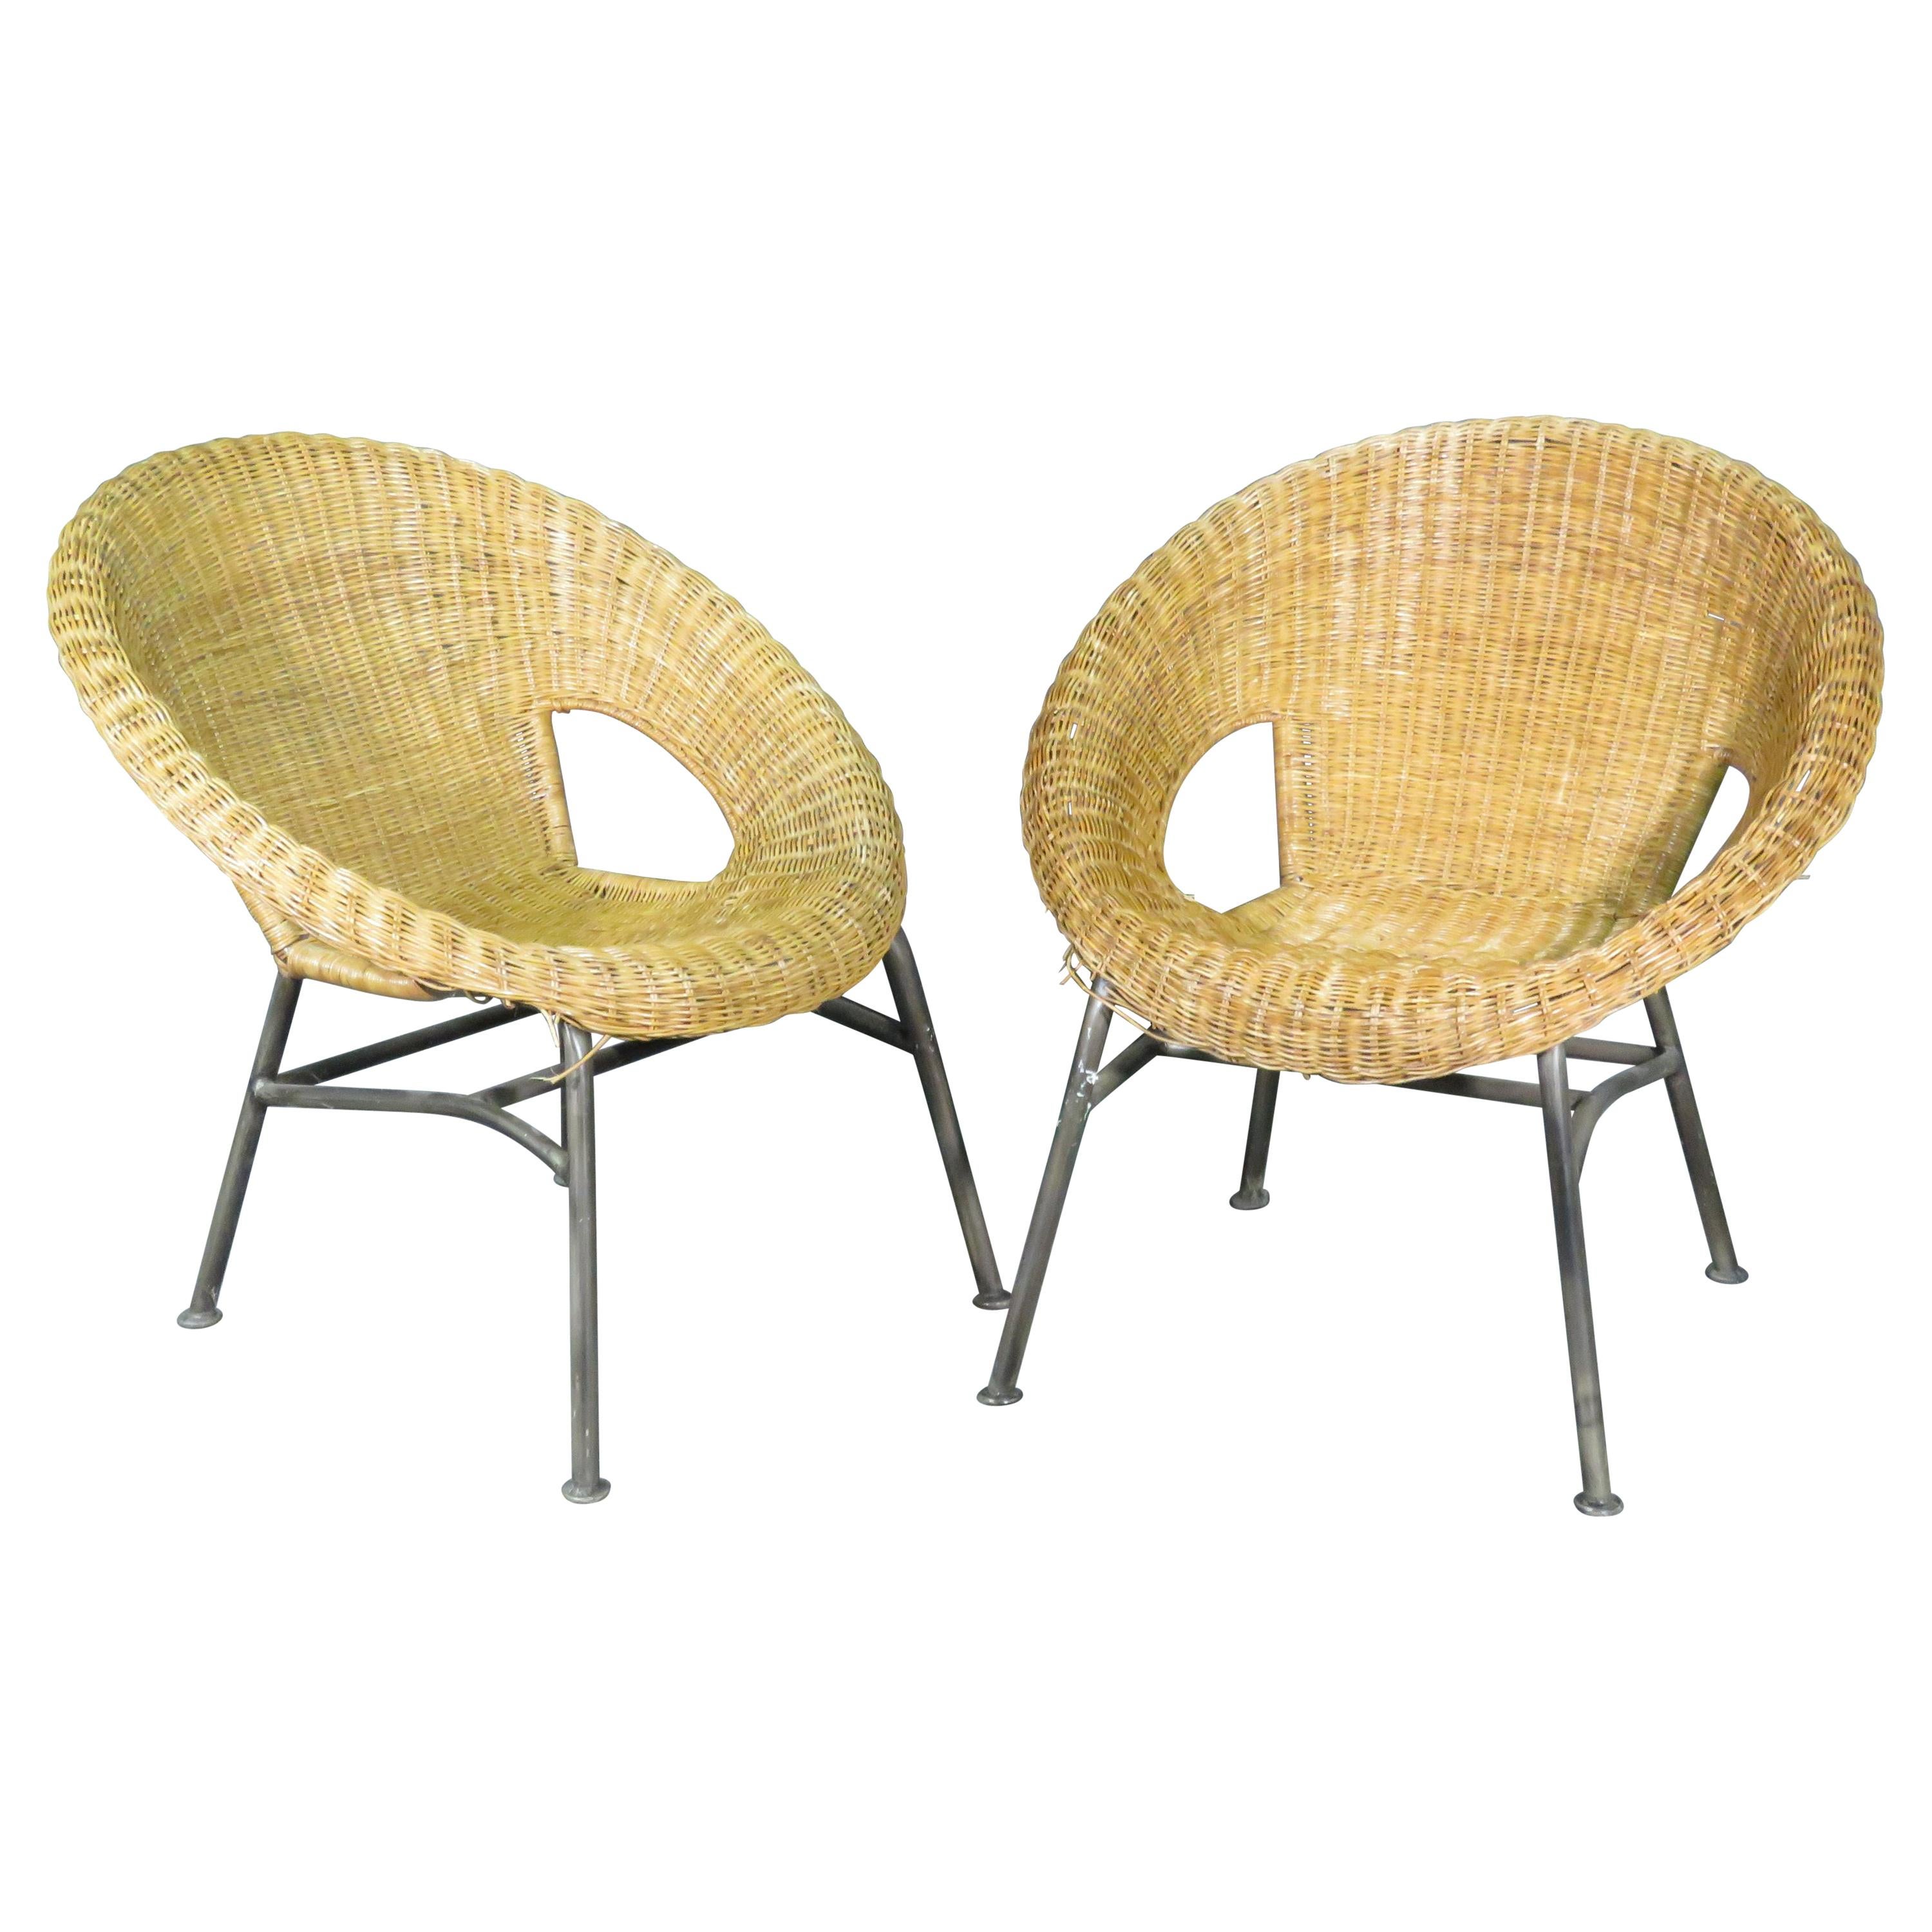 Pair of Vintage Wicker Basket Chairs